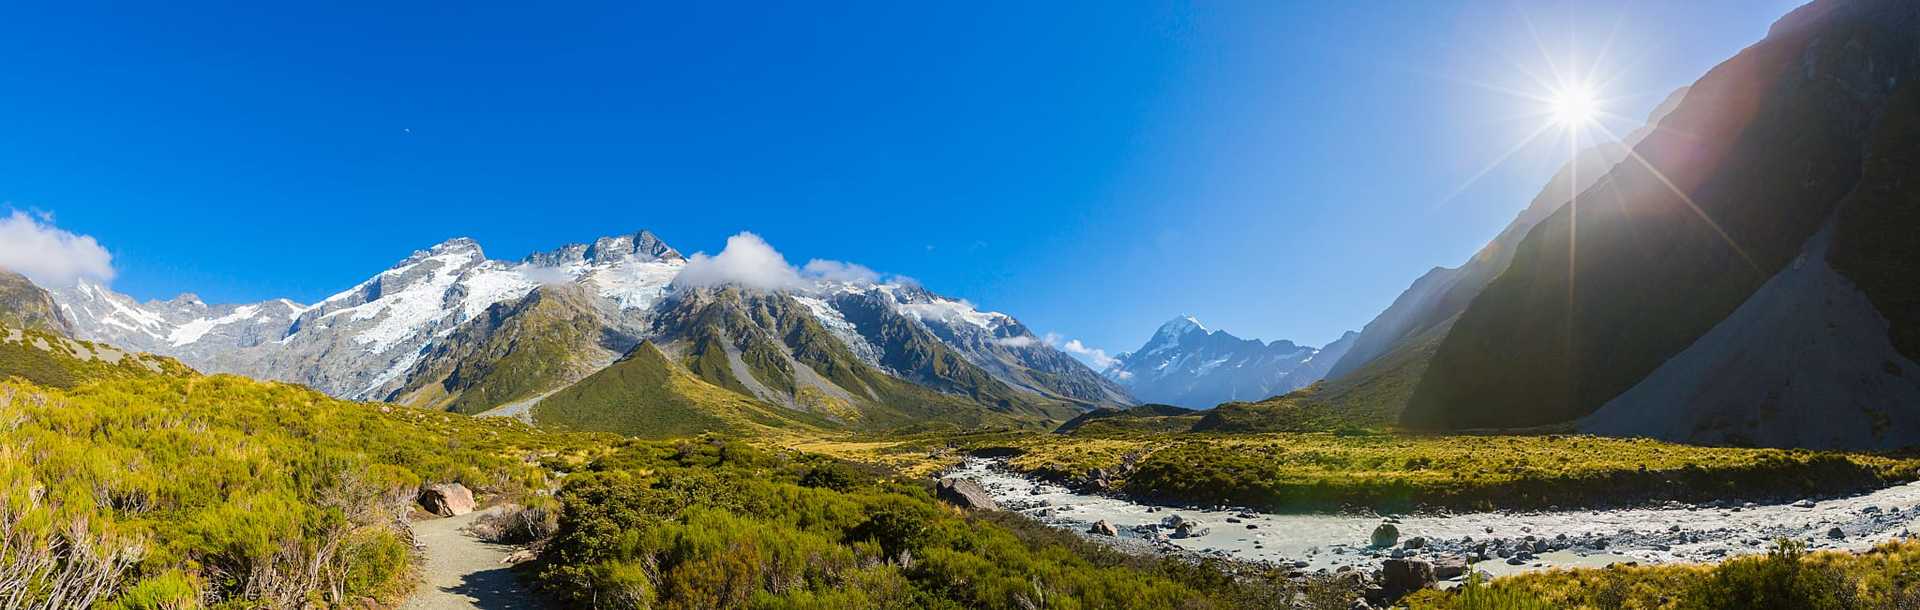 Panorama of Aoraki Mount Cook National Park, New Zealand